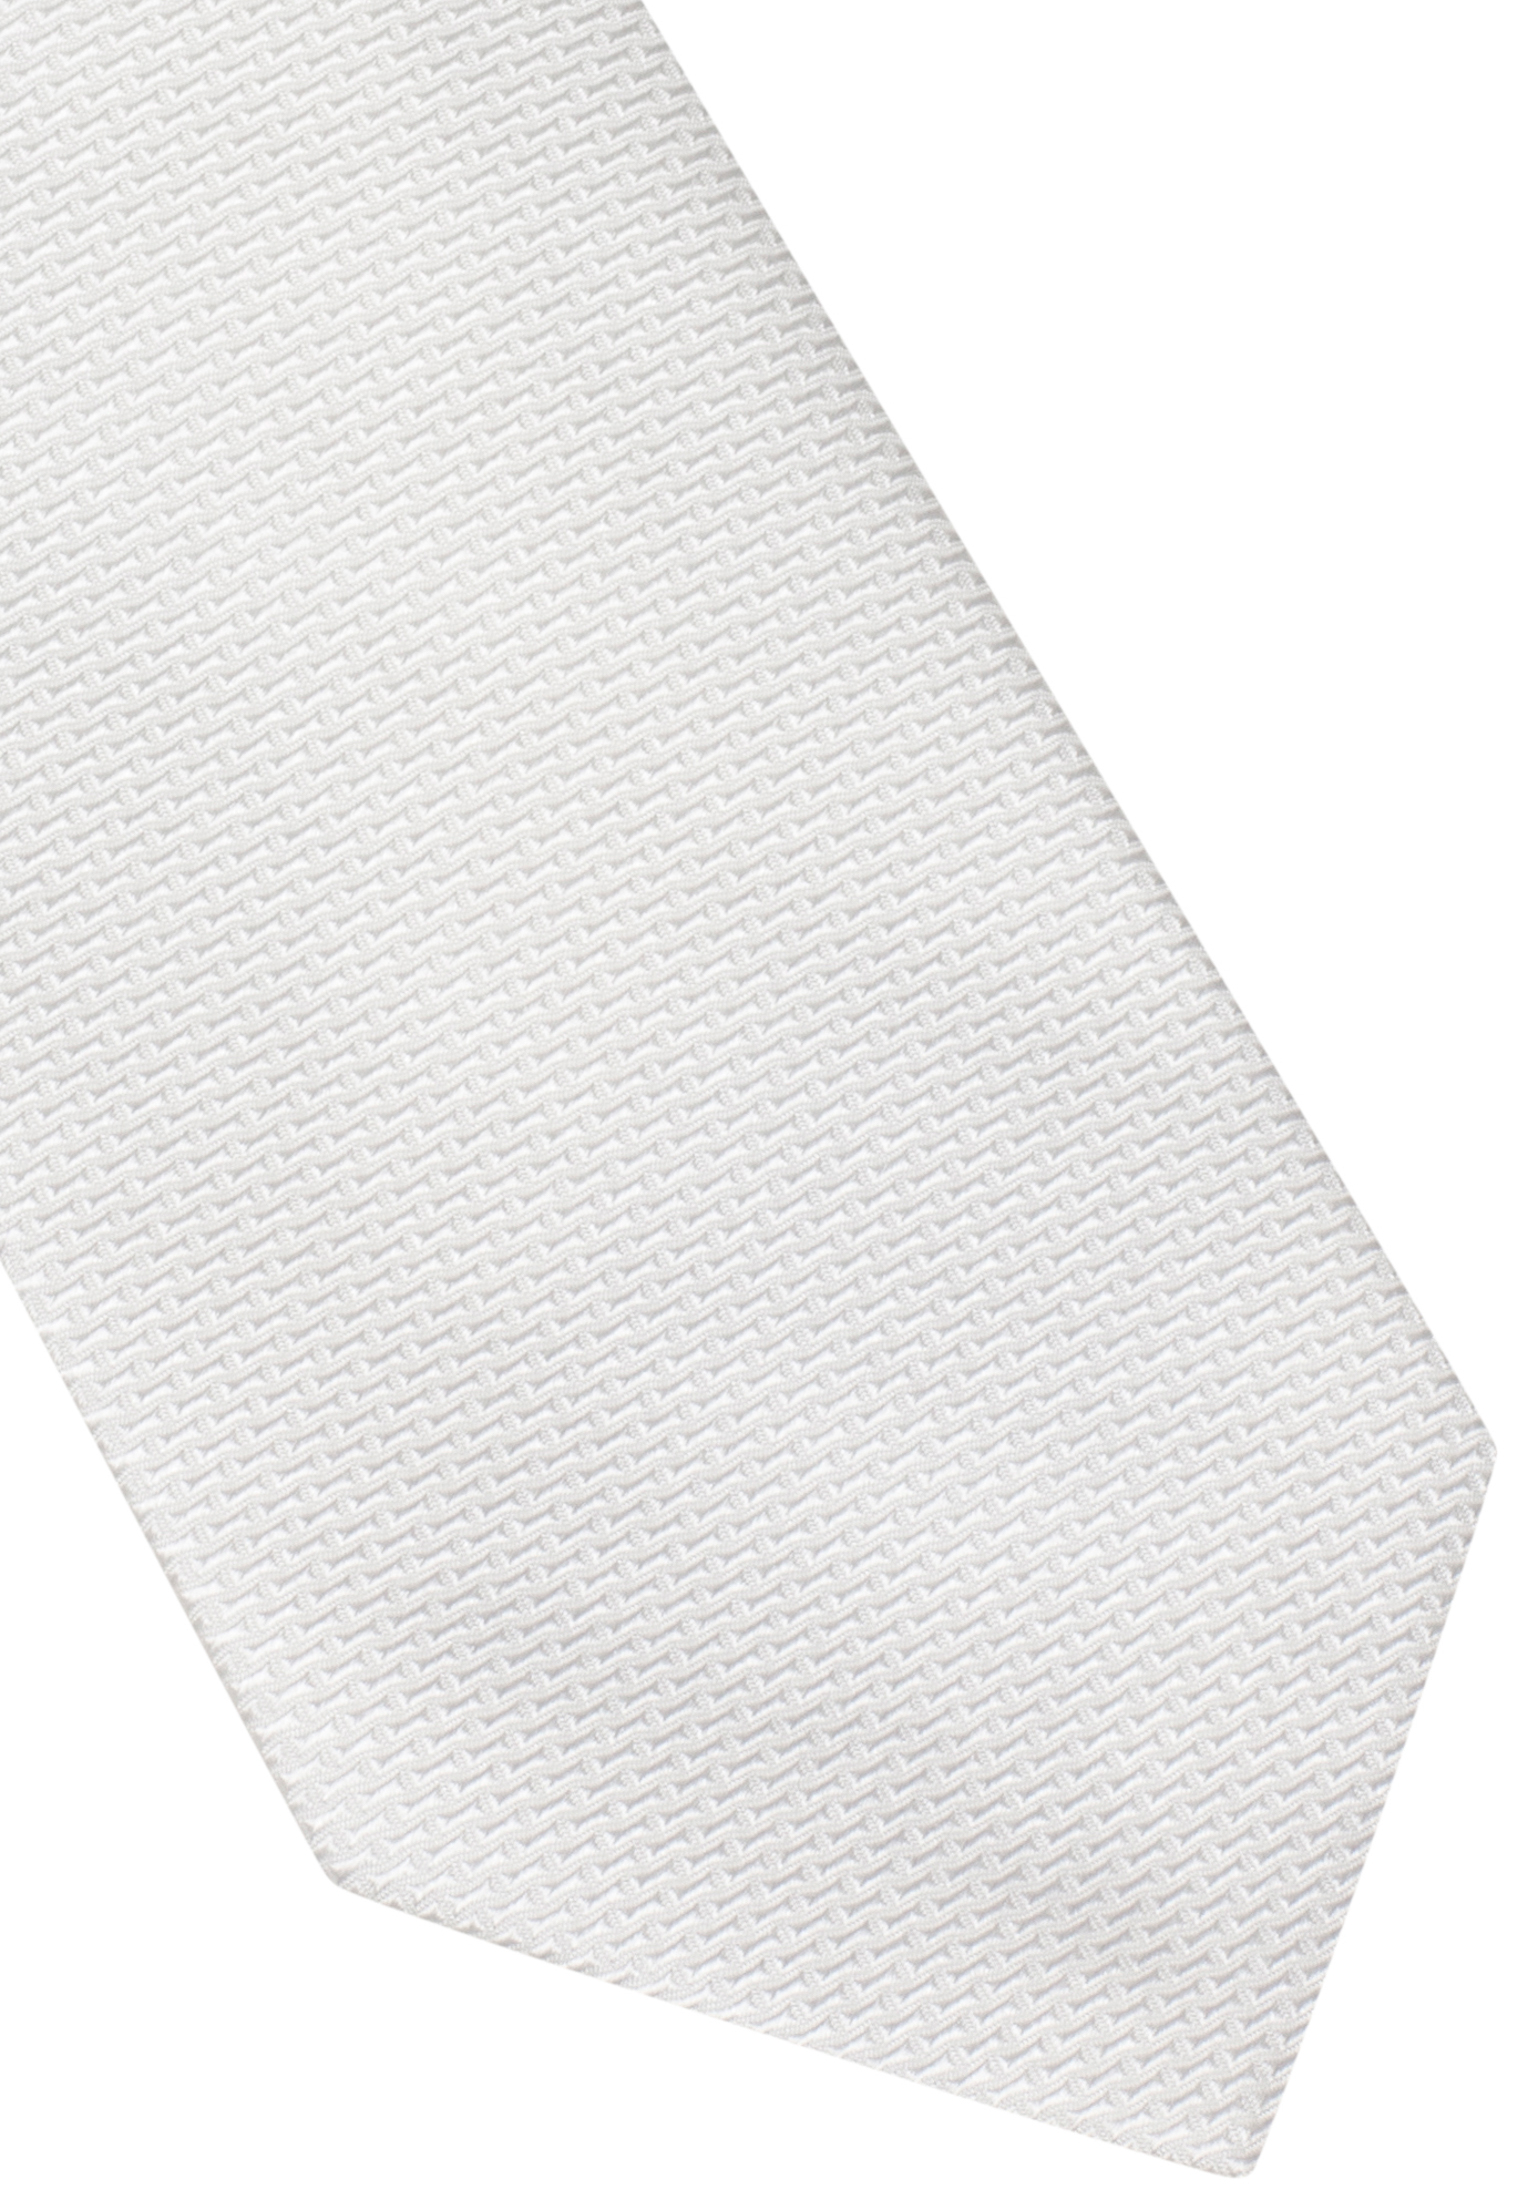 Cravate blanc structuré